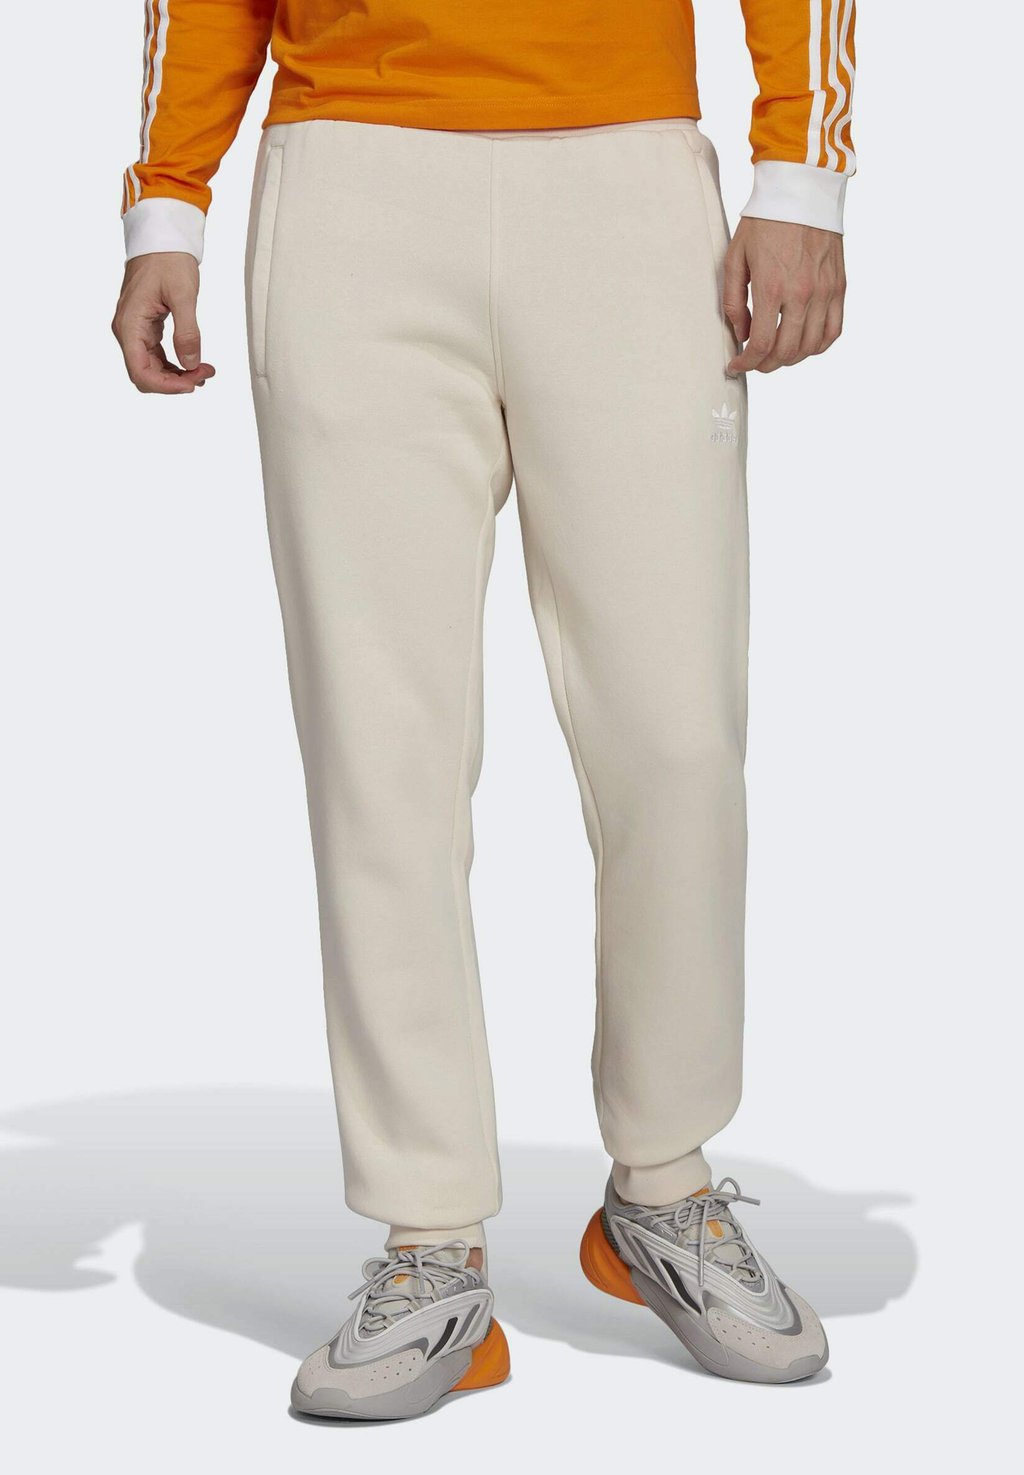 Спортивные брюки Adicolor Essentials Trefoil adidas Originals, белый adidas originals adicolor essentials trefoil